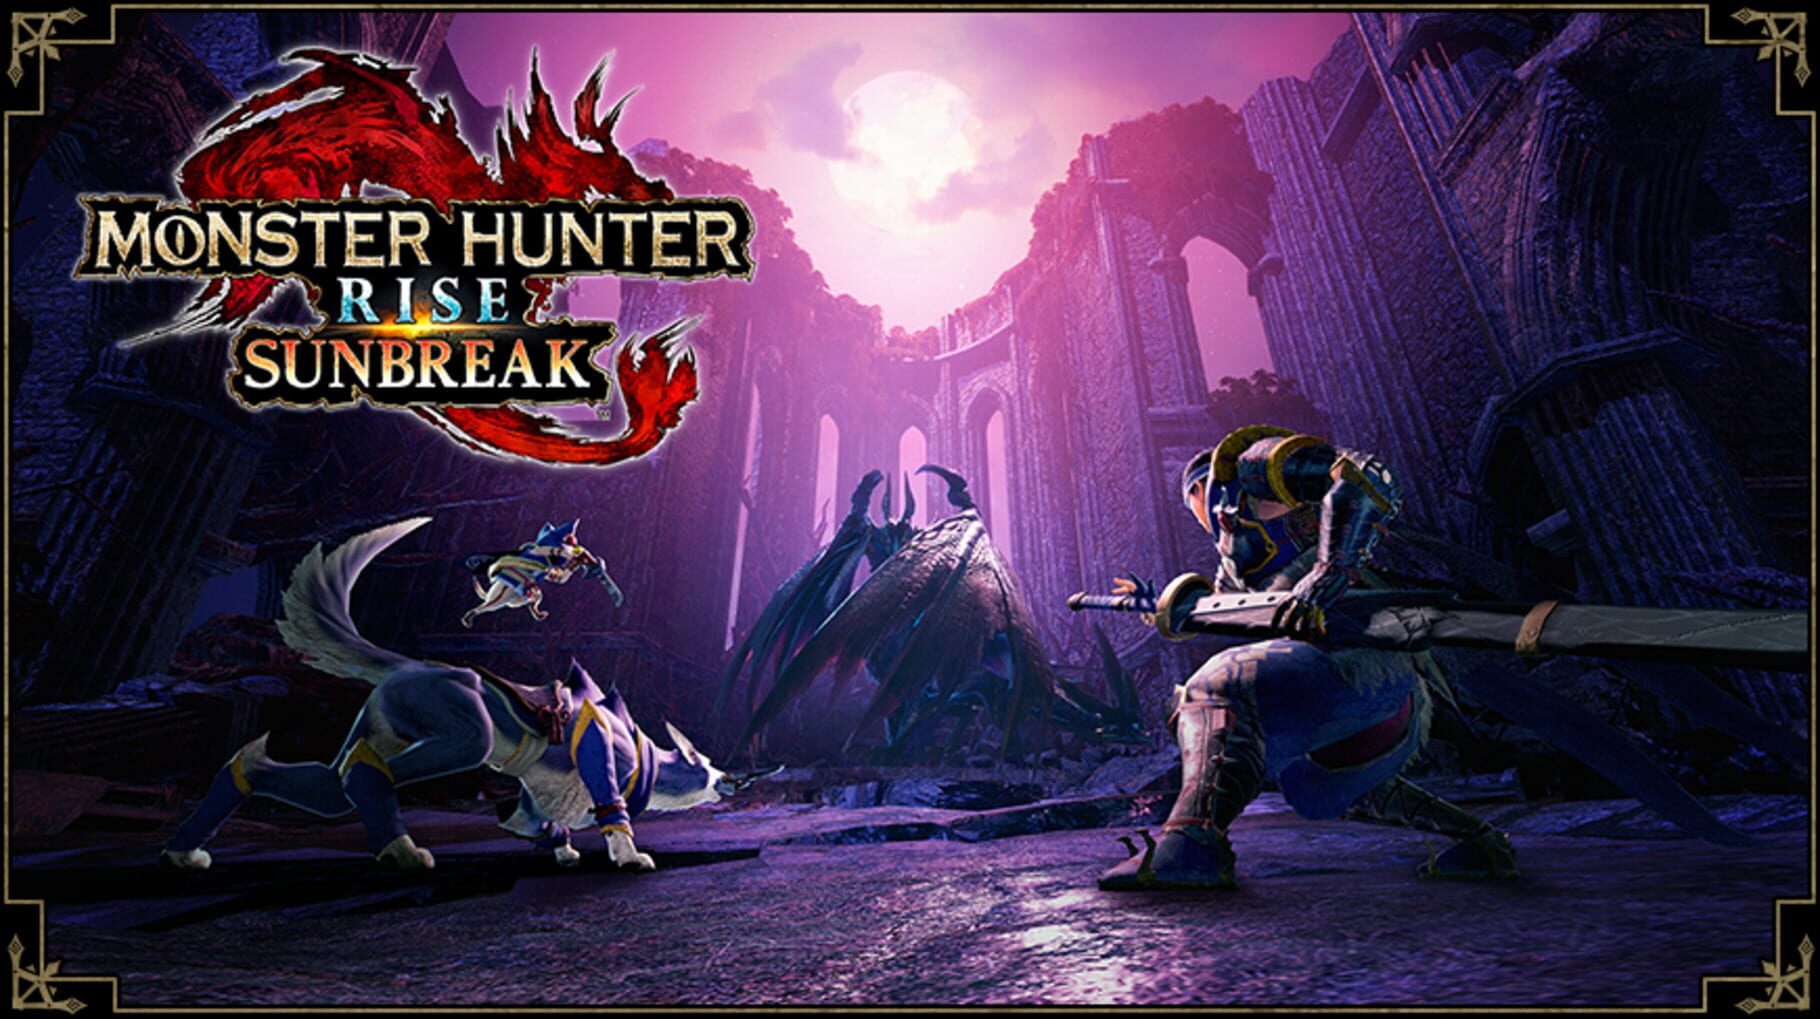 Artwork for Monster Hunter Rise: Sunbreak